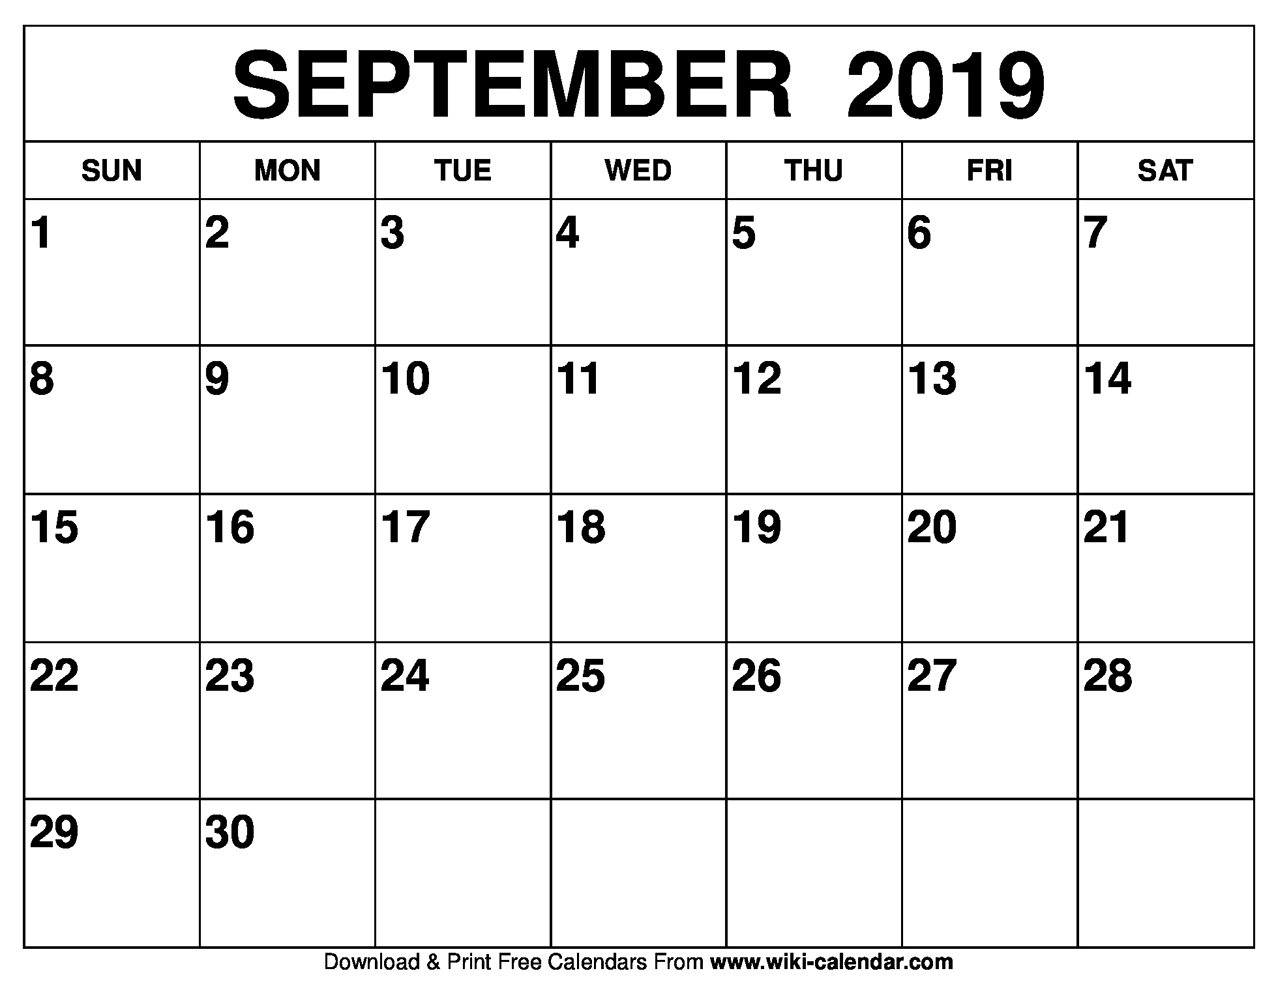 September, 2019